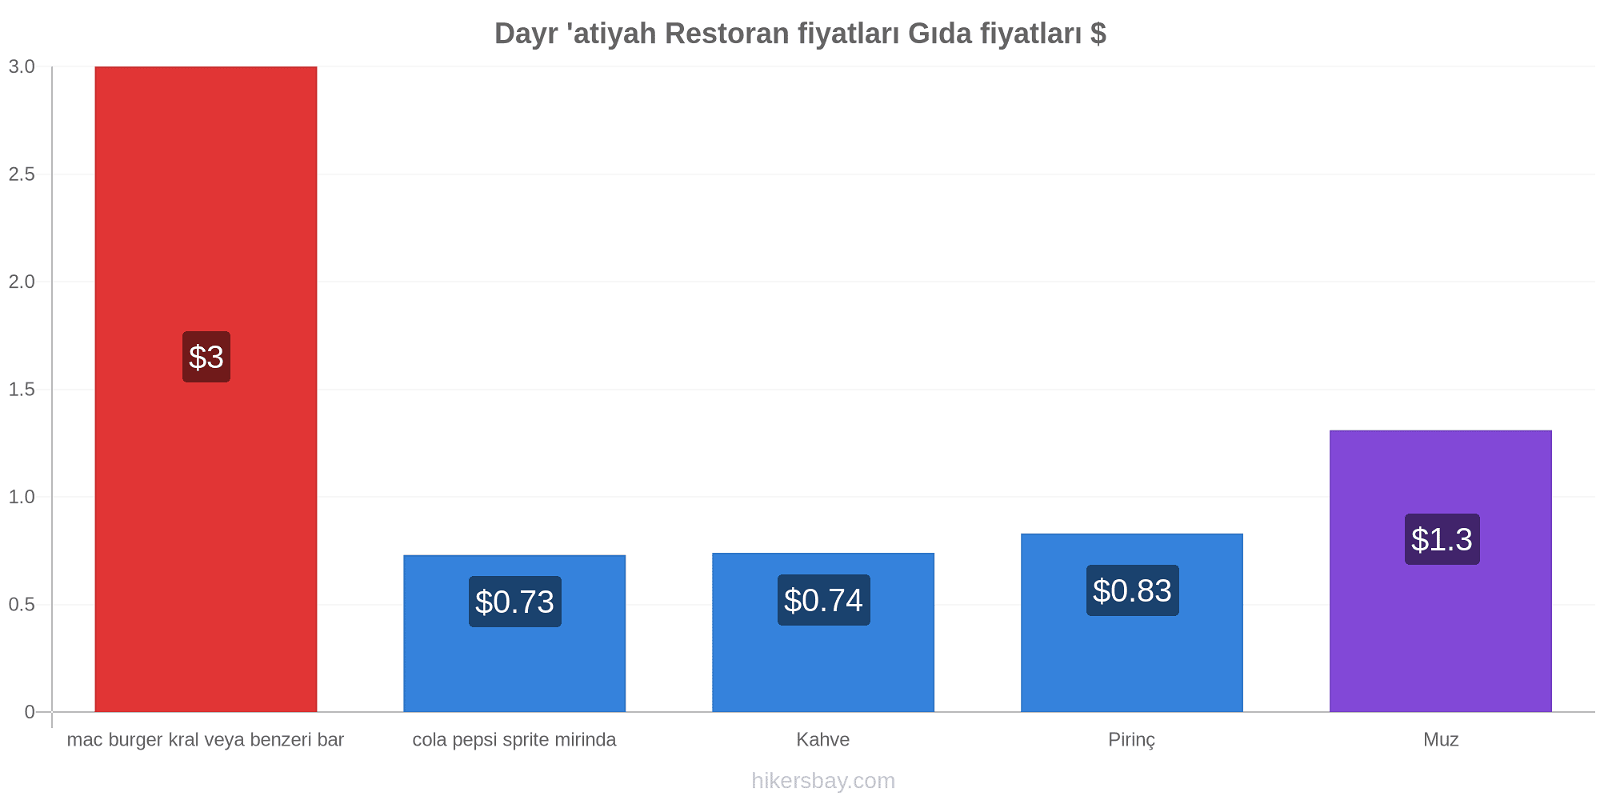 Dayr 'atiyah fiyat değişiklikleri hikersbay.com